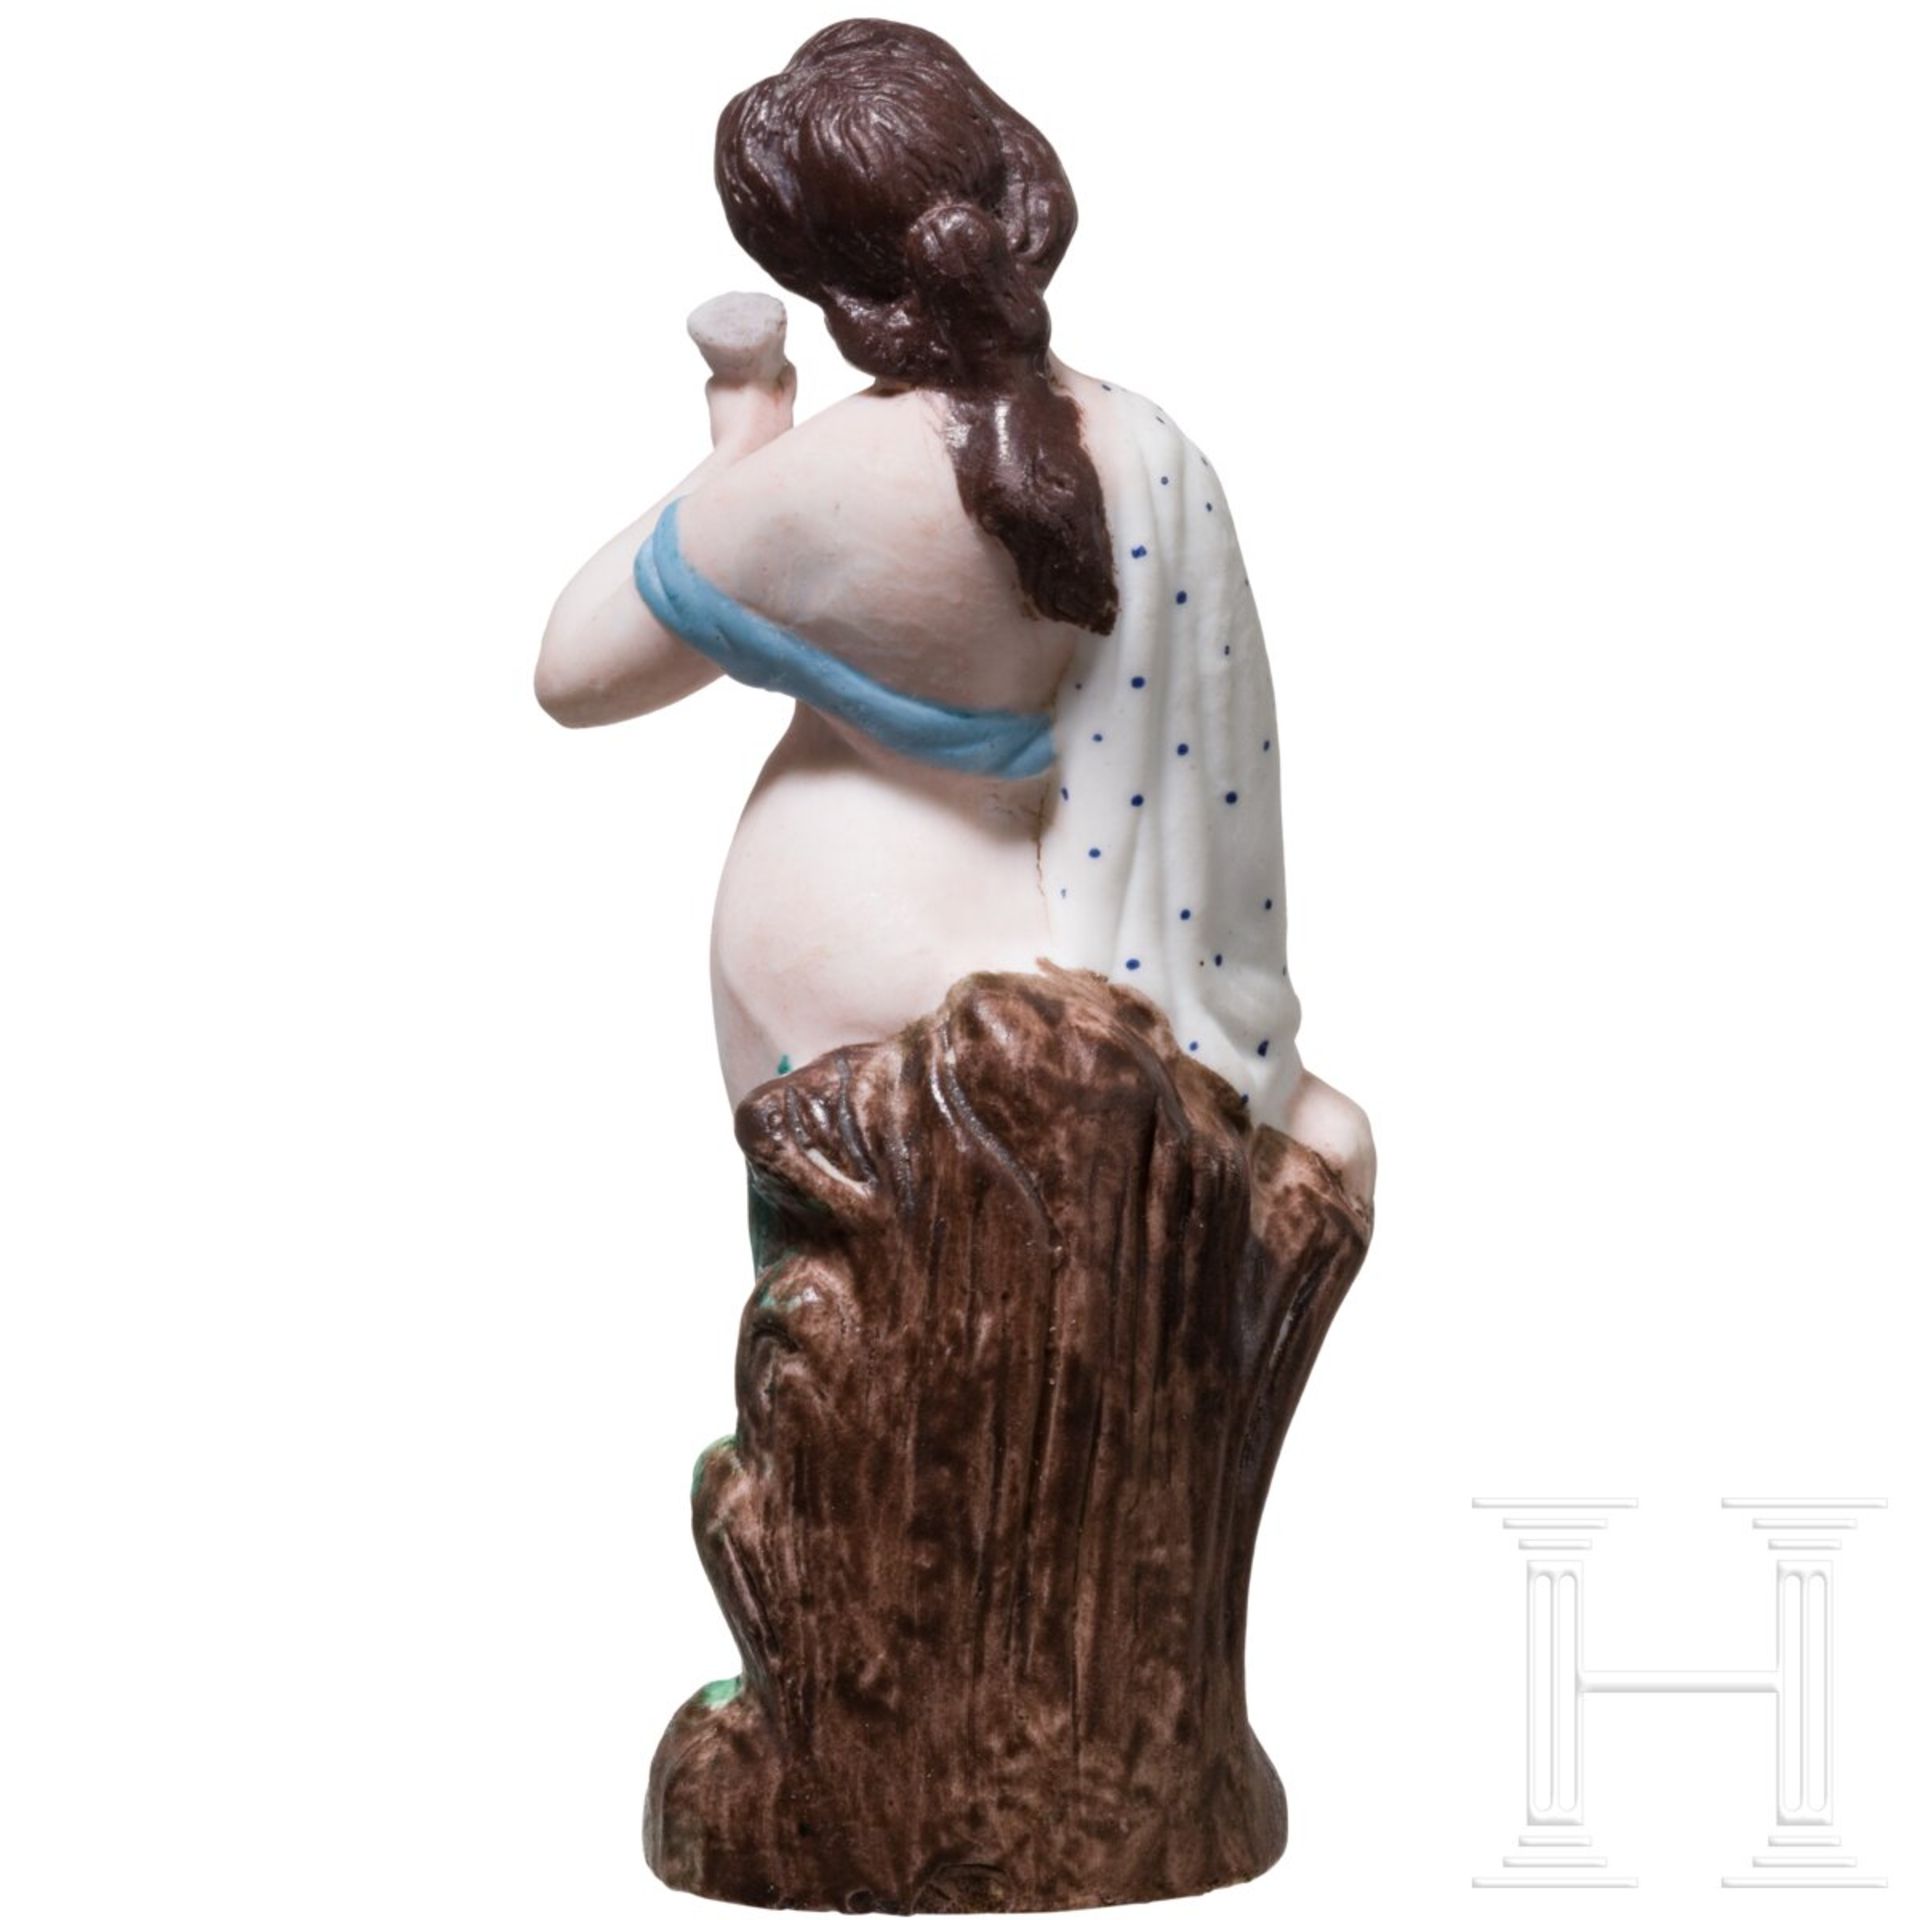 Sehr seltene erotische Porzellanfigur einer Dame, russische Privatmanufaktur, Mitte 19. Jhdt. - Bild 3 aus 5